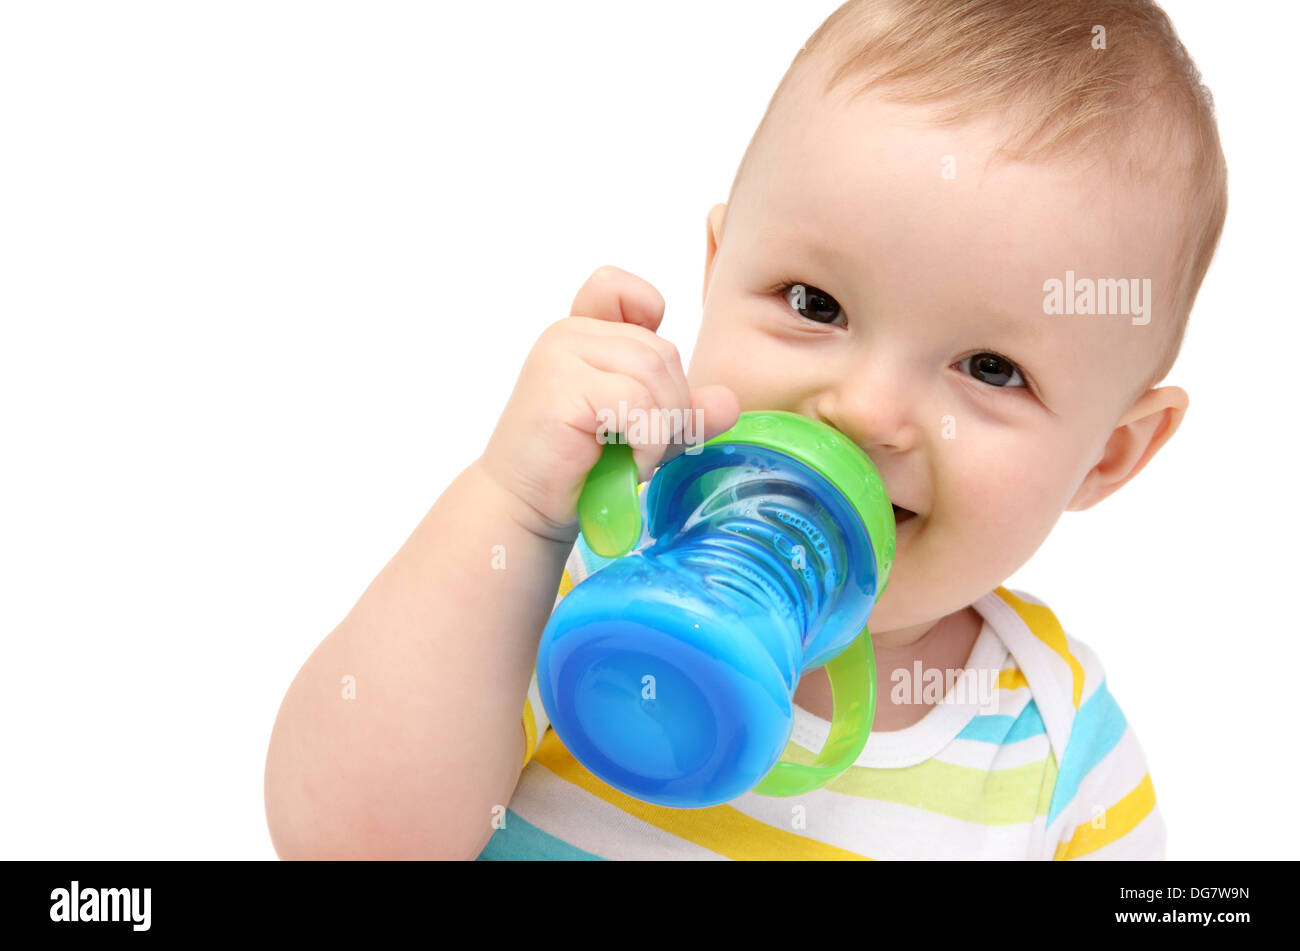 happy baby with milk bottle Stock Photo